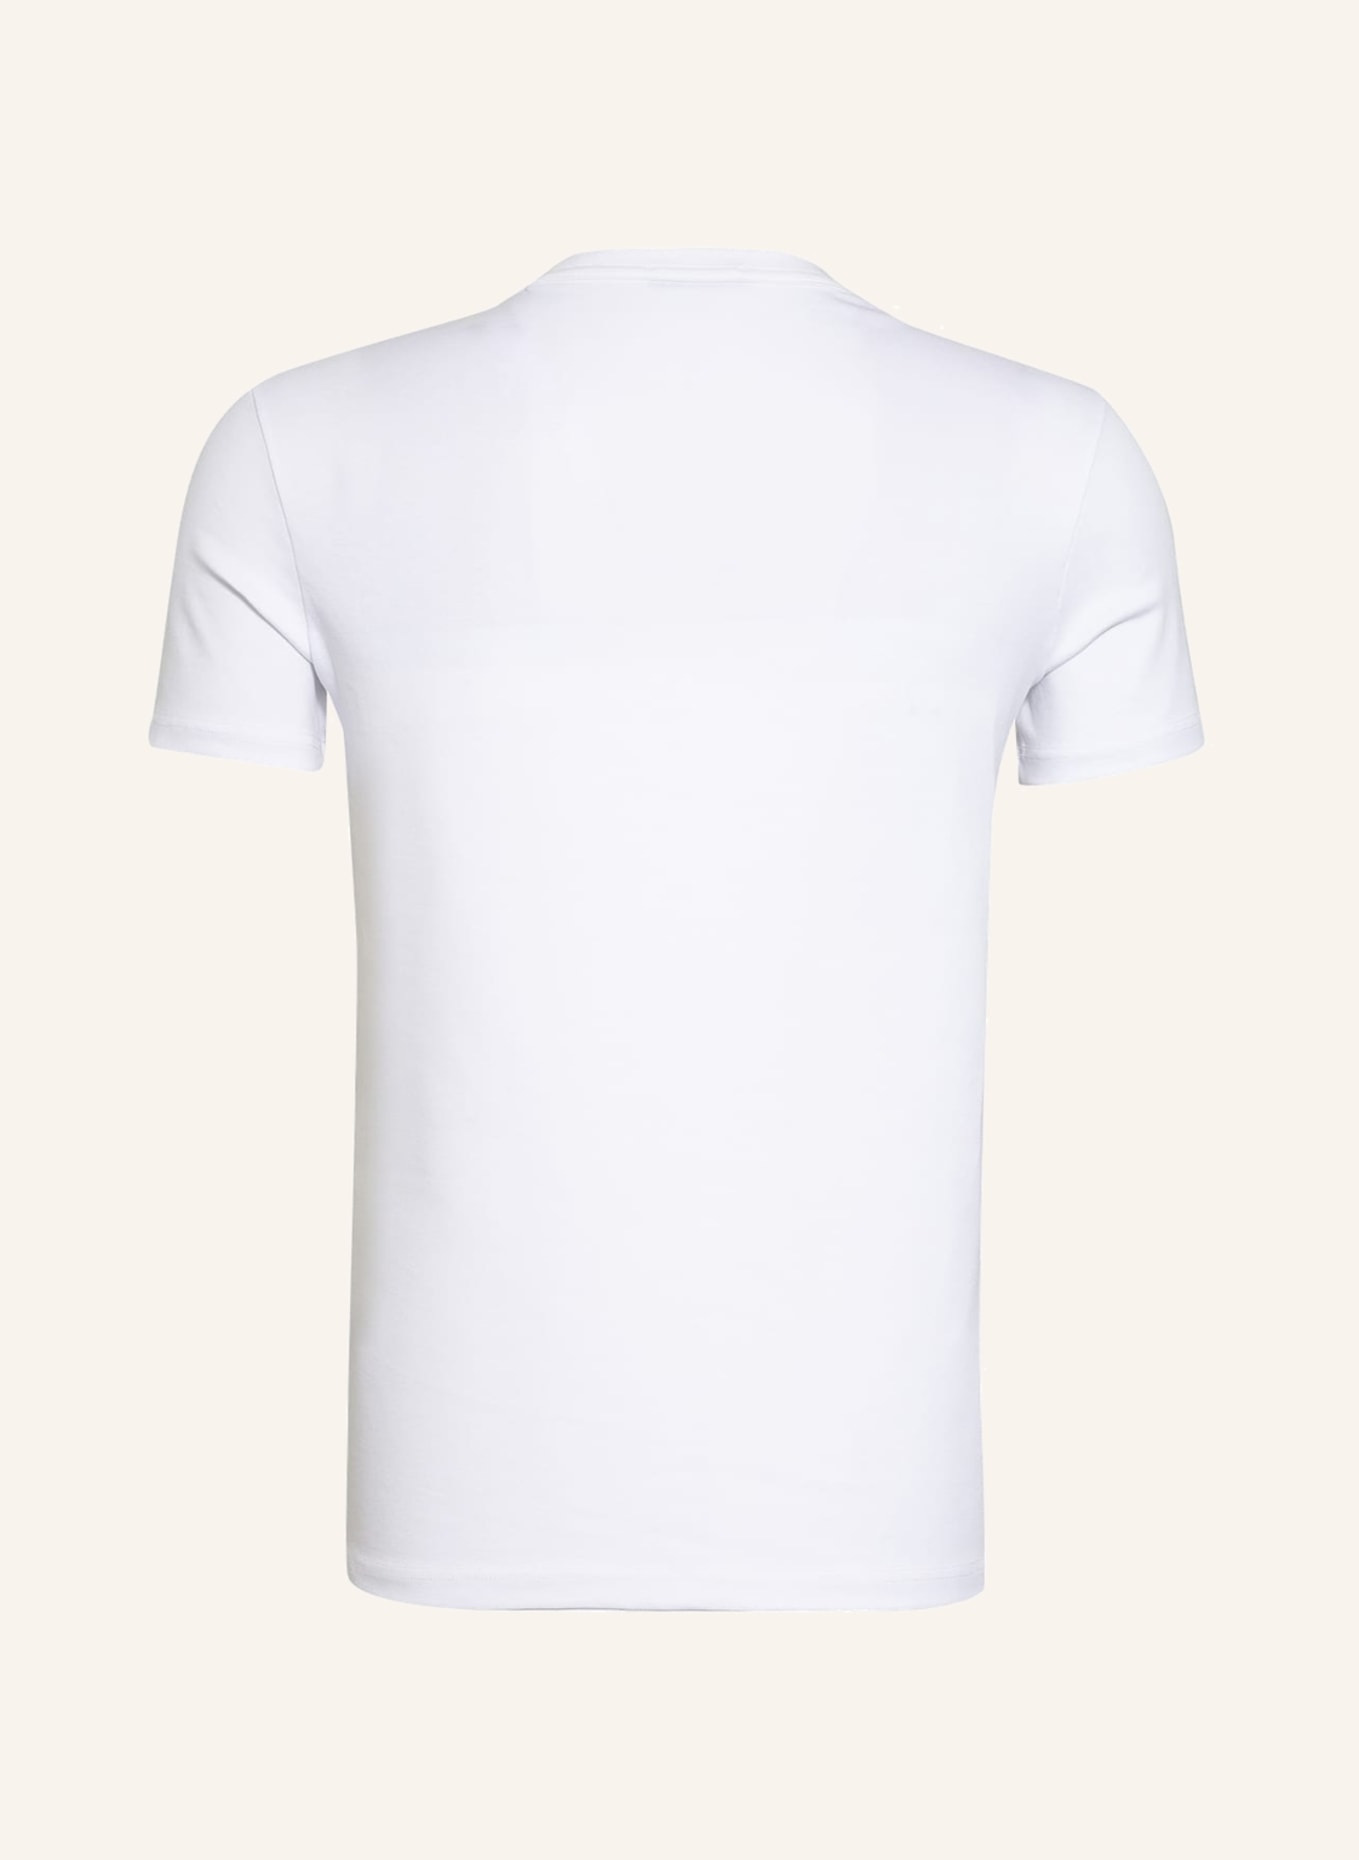 TOM FORD V-neck shirt, Color: 100 WHITE (Image 2)